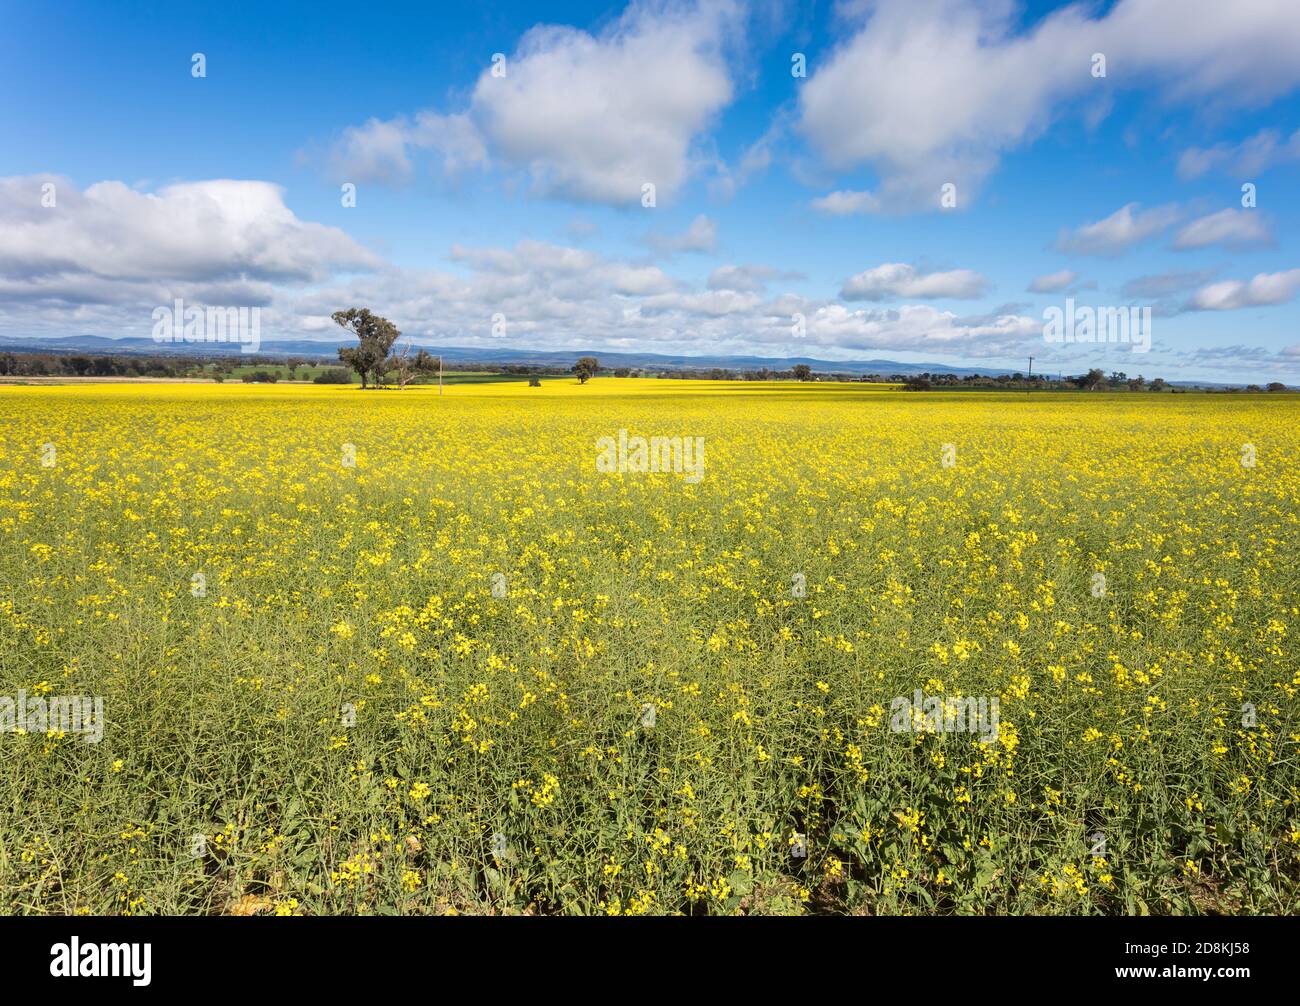 Rapsfeld in der Nähe von Cowra in Zentral-West von NSW Australien. Gebiete im zentralen Westen von NSW sind gute landwirtschaftliche Flächen mit Getreidepflanzen wie Stockfoto